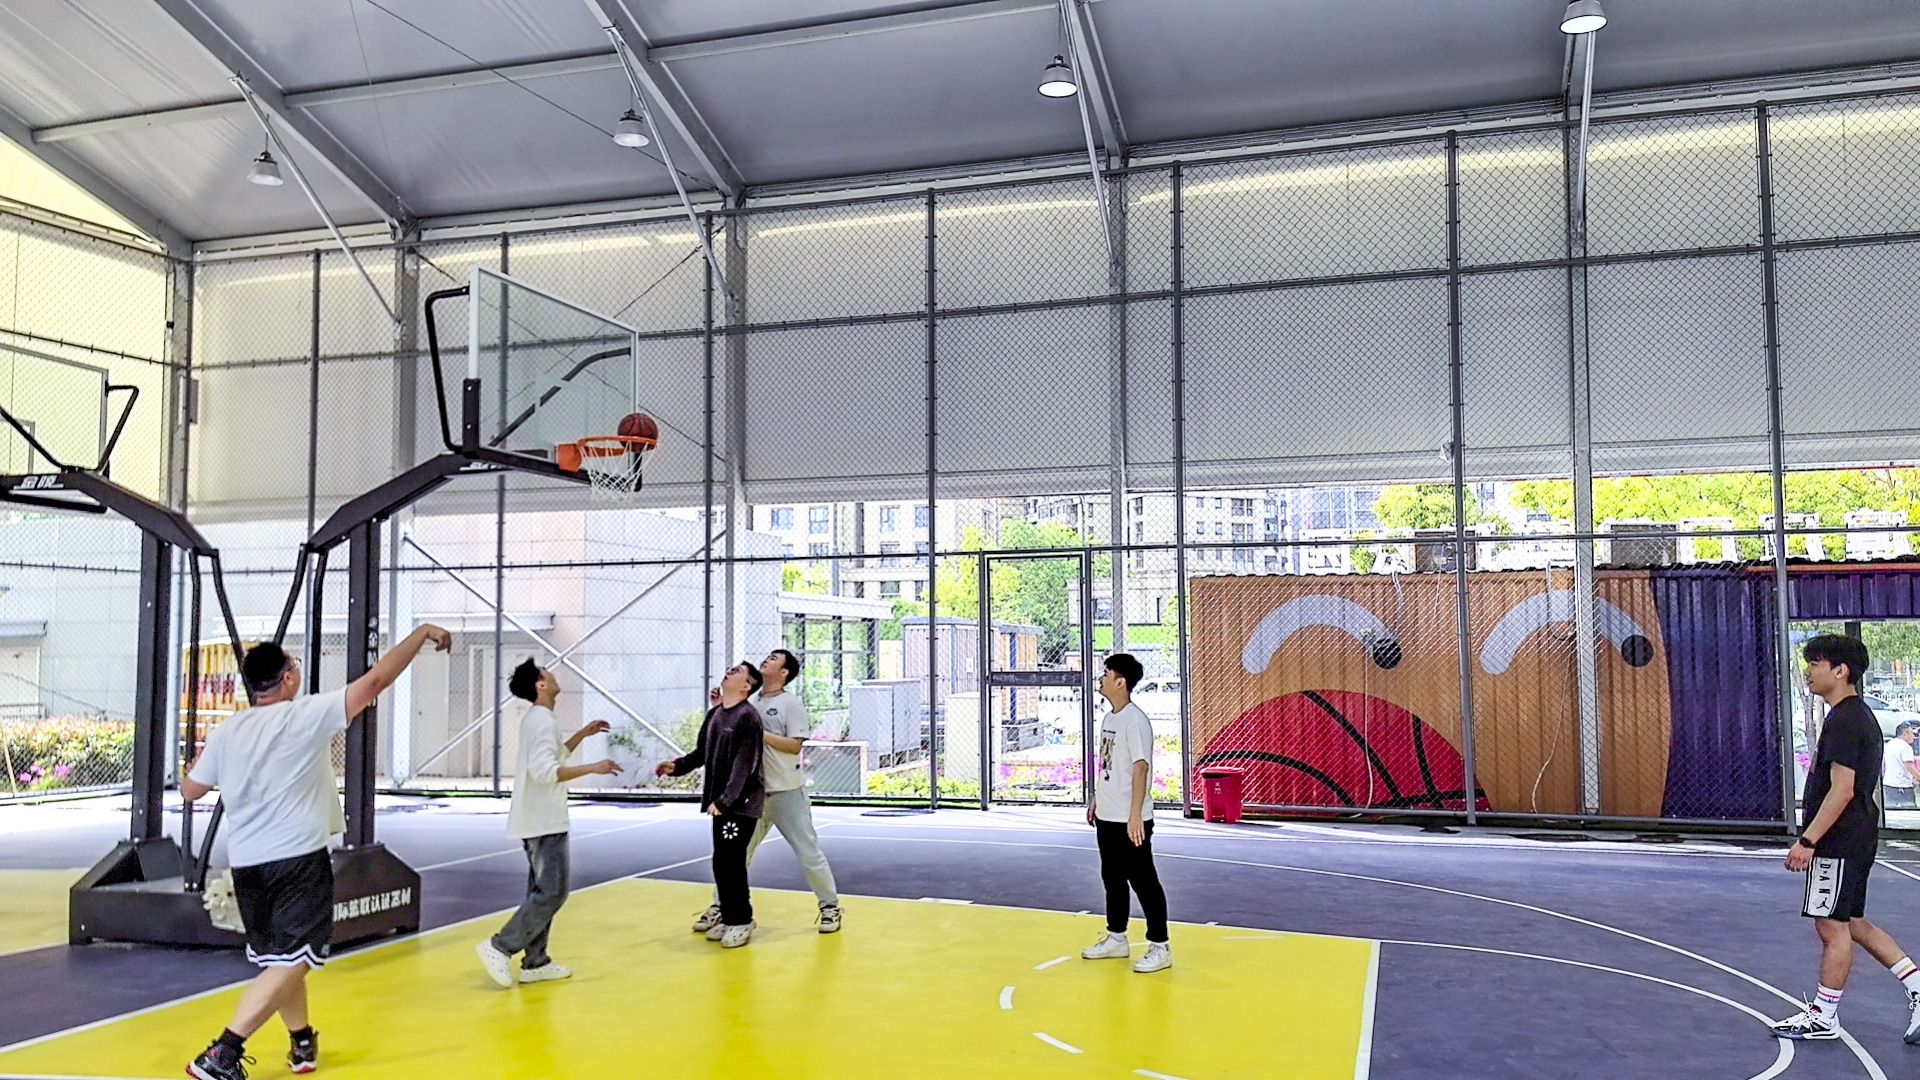 地铁5号线三角路站旁新增一座口袋篮球公园